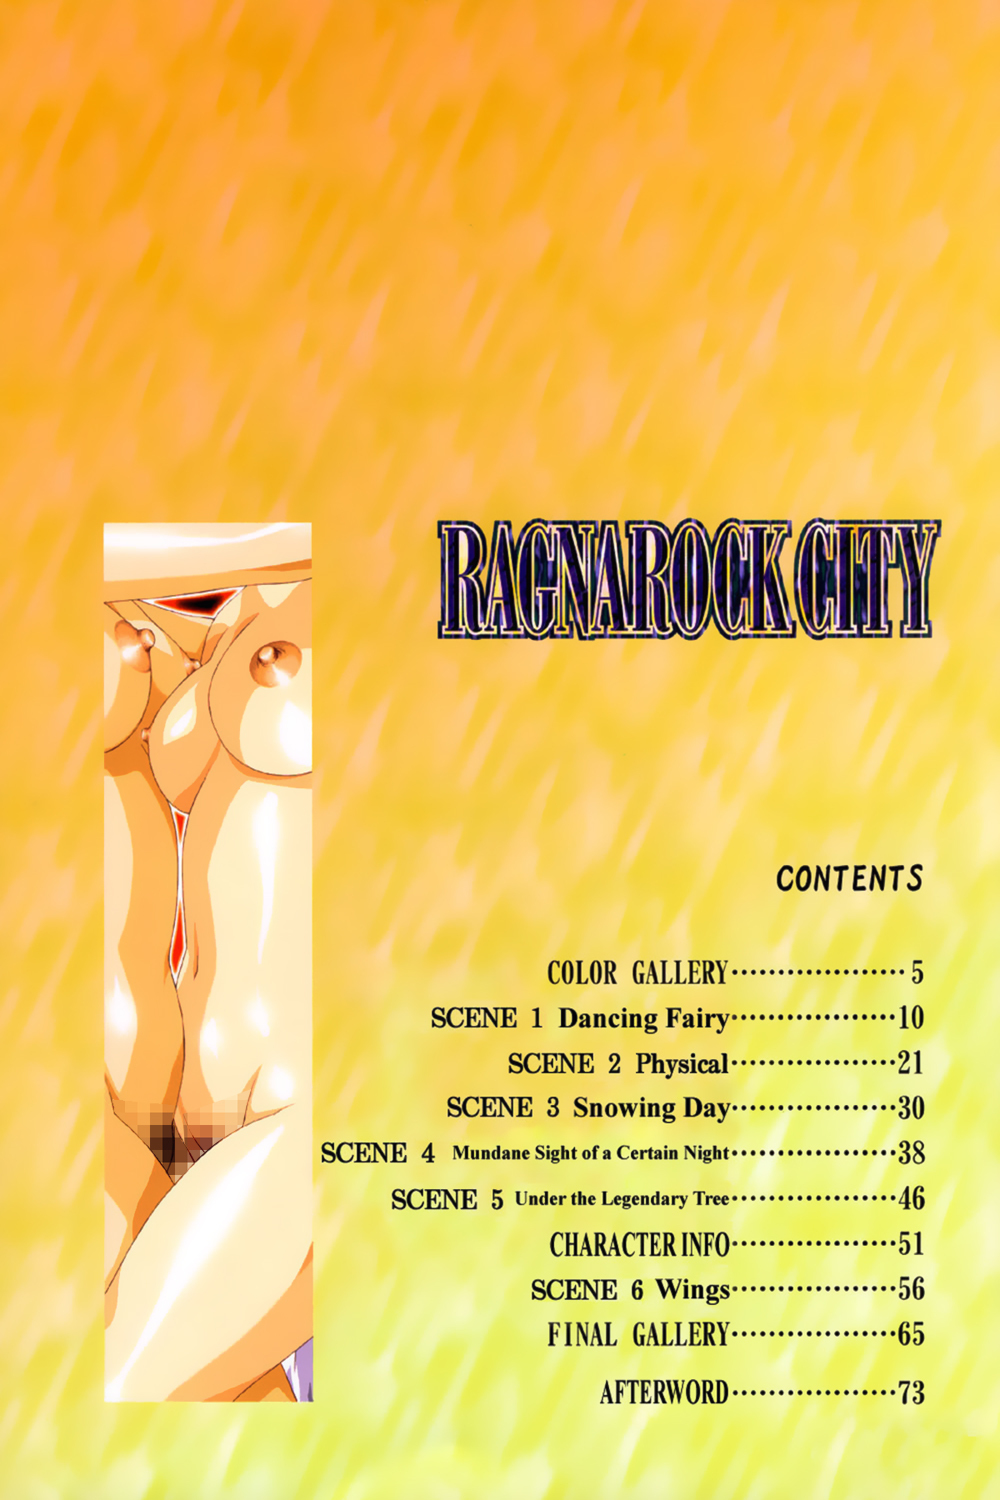 [Satoshi Urushihara] Ragnarock City [English] page 5 full